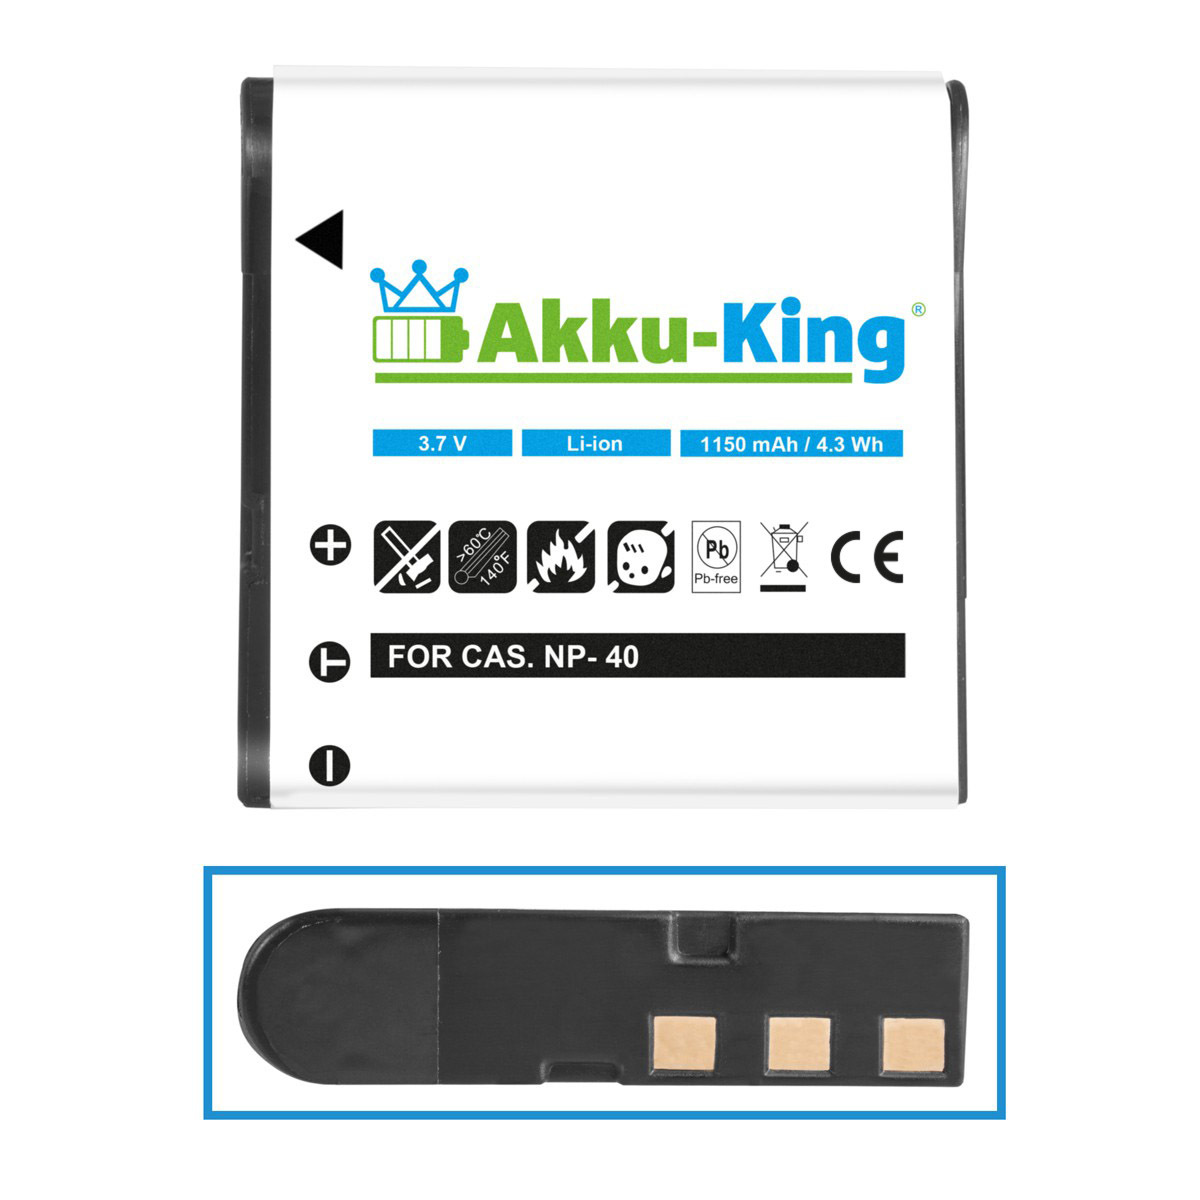 AKKU-KING Akku kompatibel mit 3.7 NP-40 Kamera-Akku, Casio Volt, 1150mAh Li-Ion